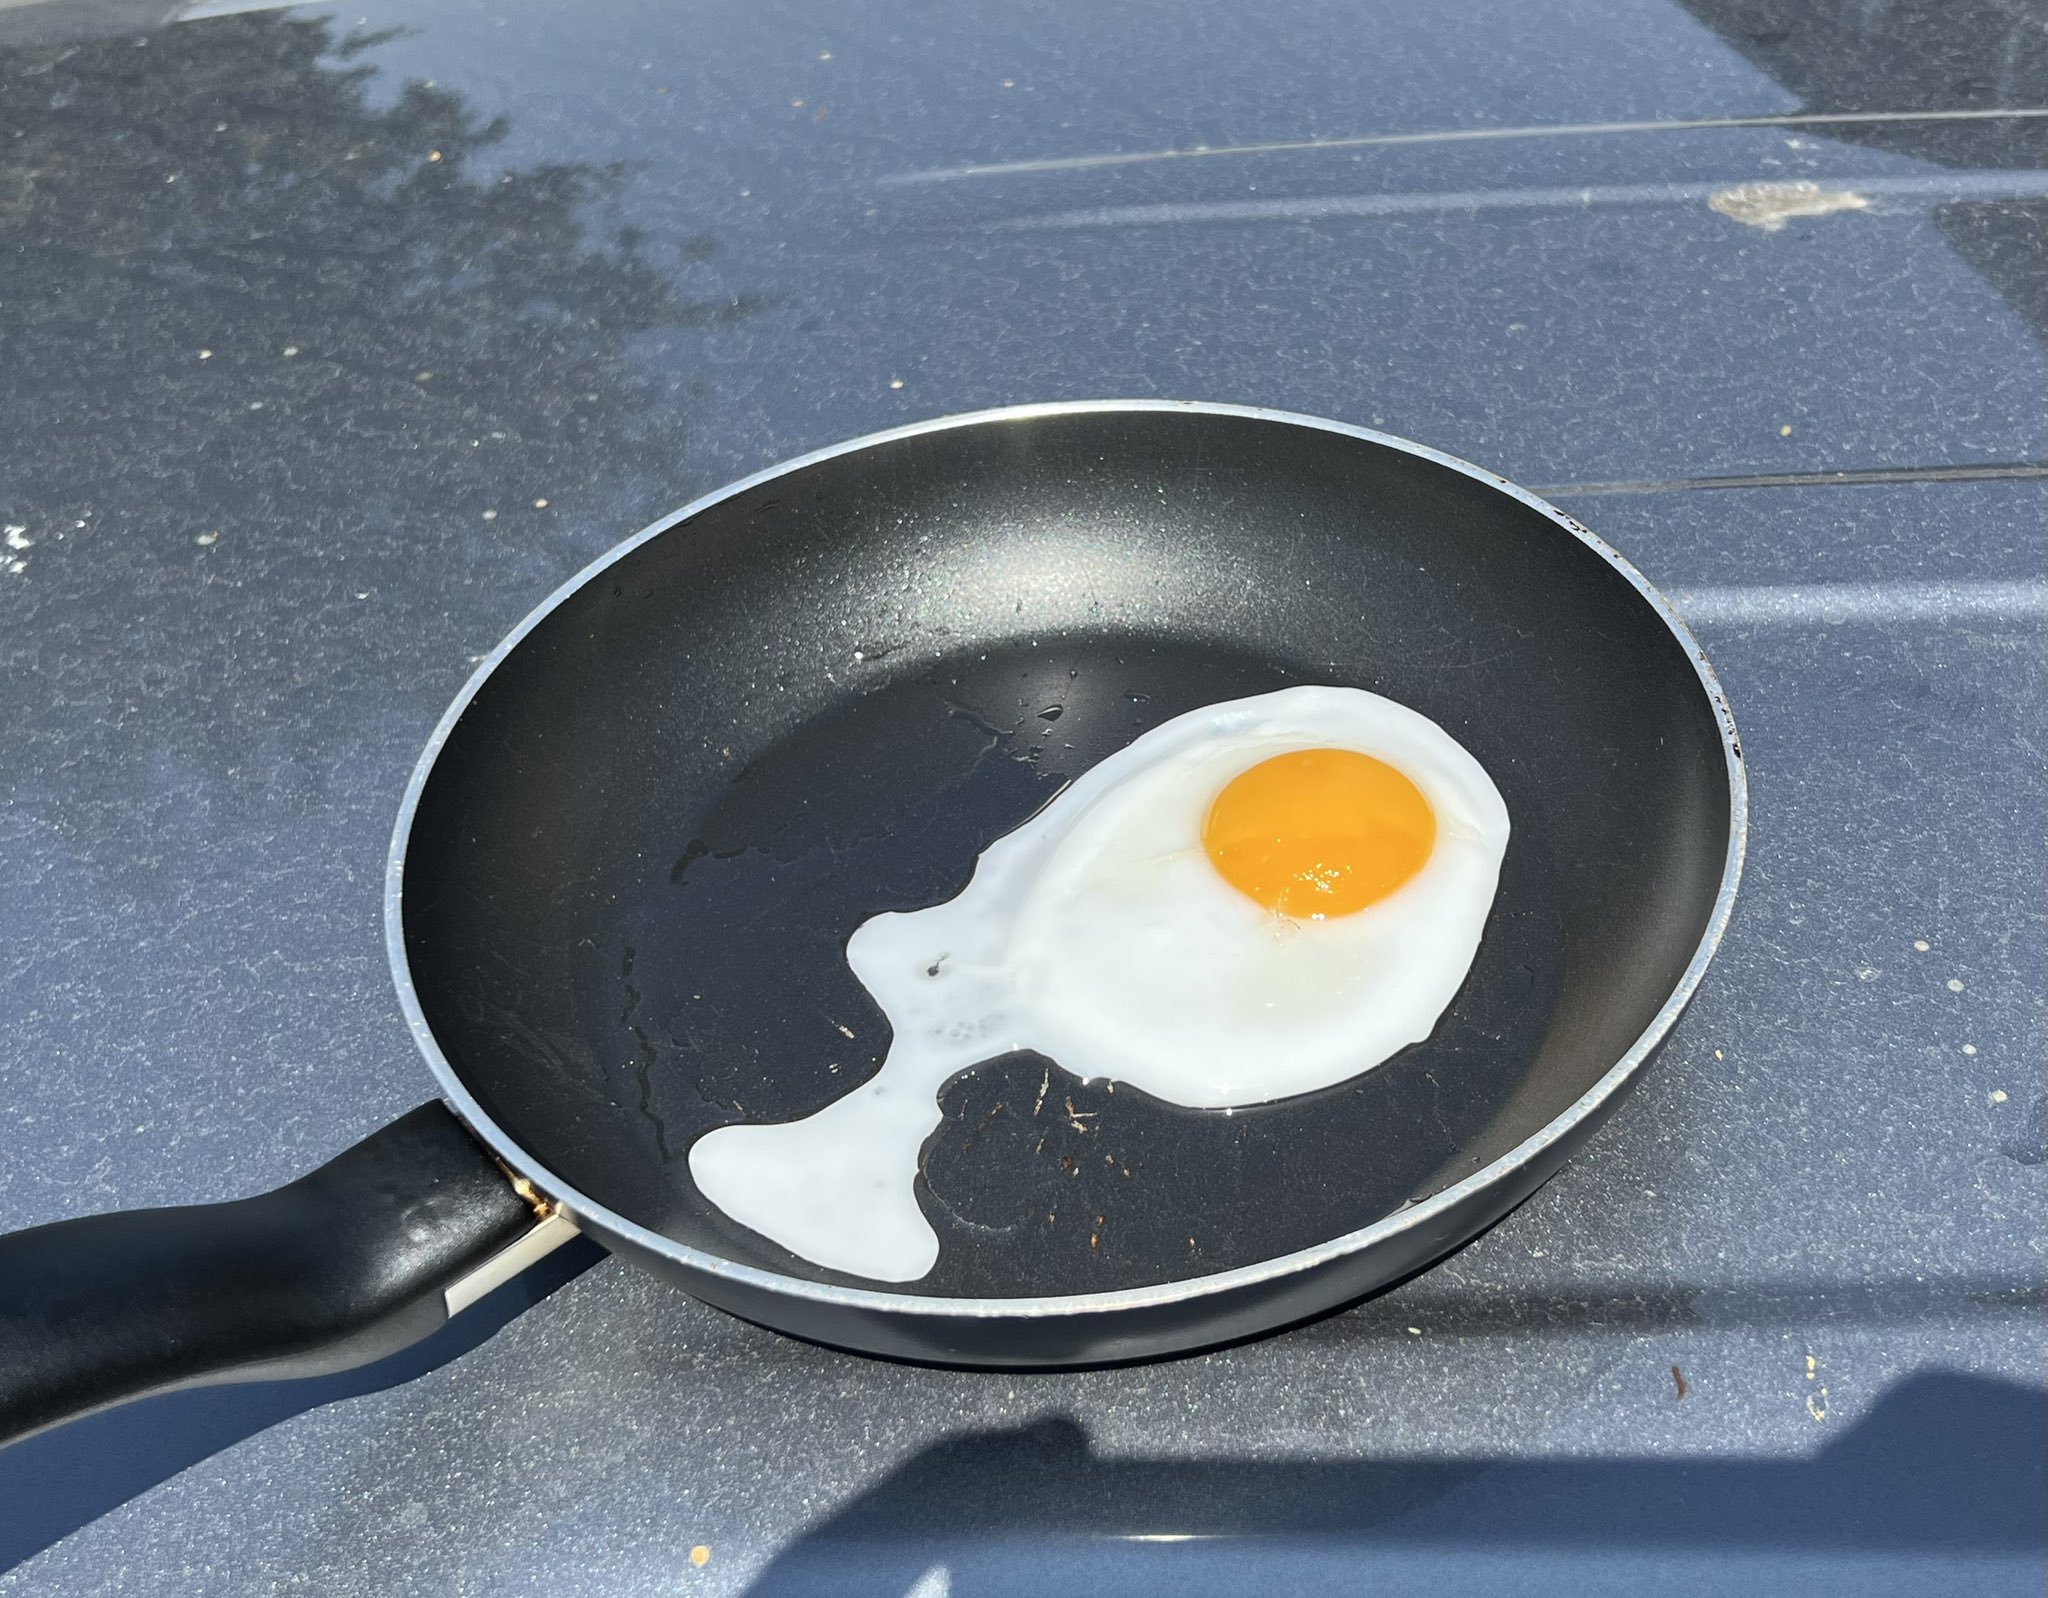 Τους 84 βαθμούς φτάνει η θερμοκρασία στα αυτοκίνητα, αβγά πάνω στα καπό αφήνουν οι Έλληνες